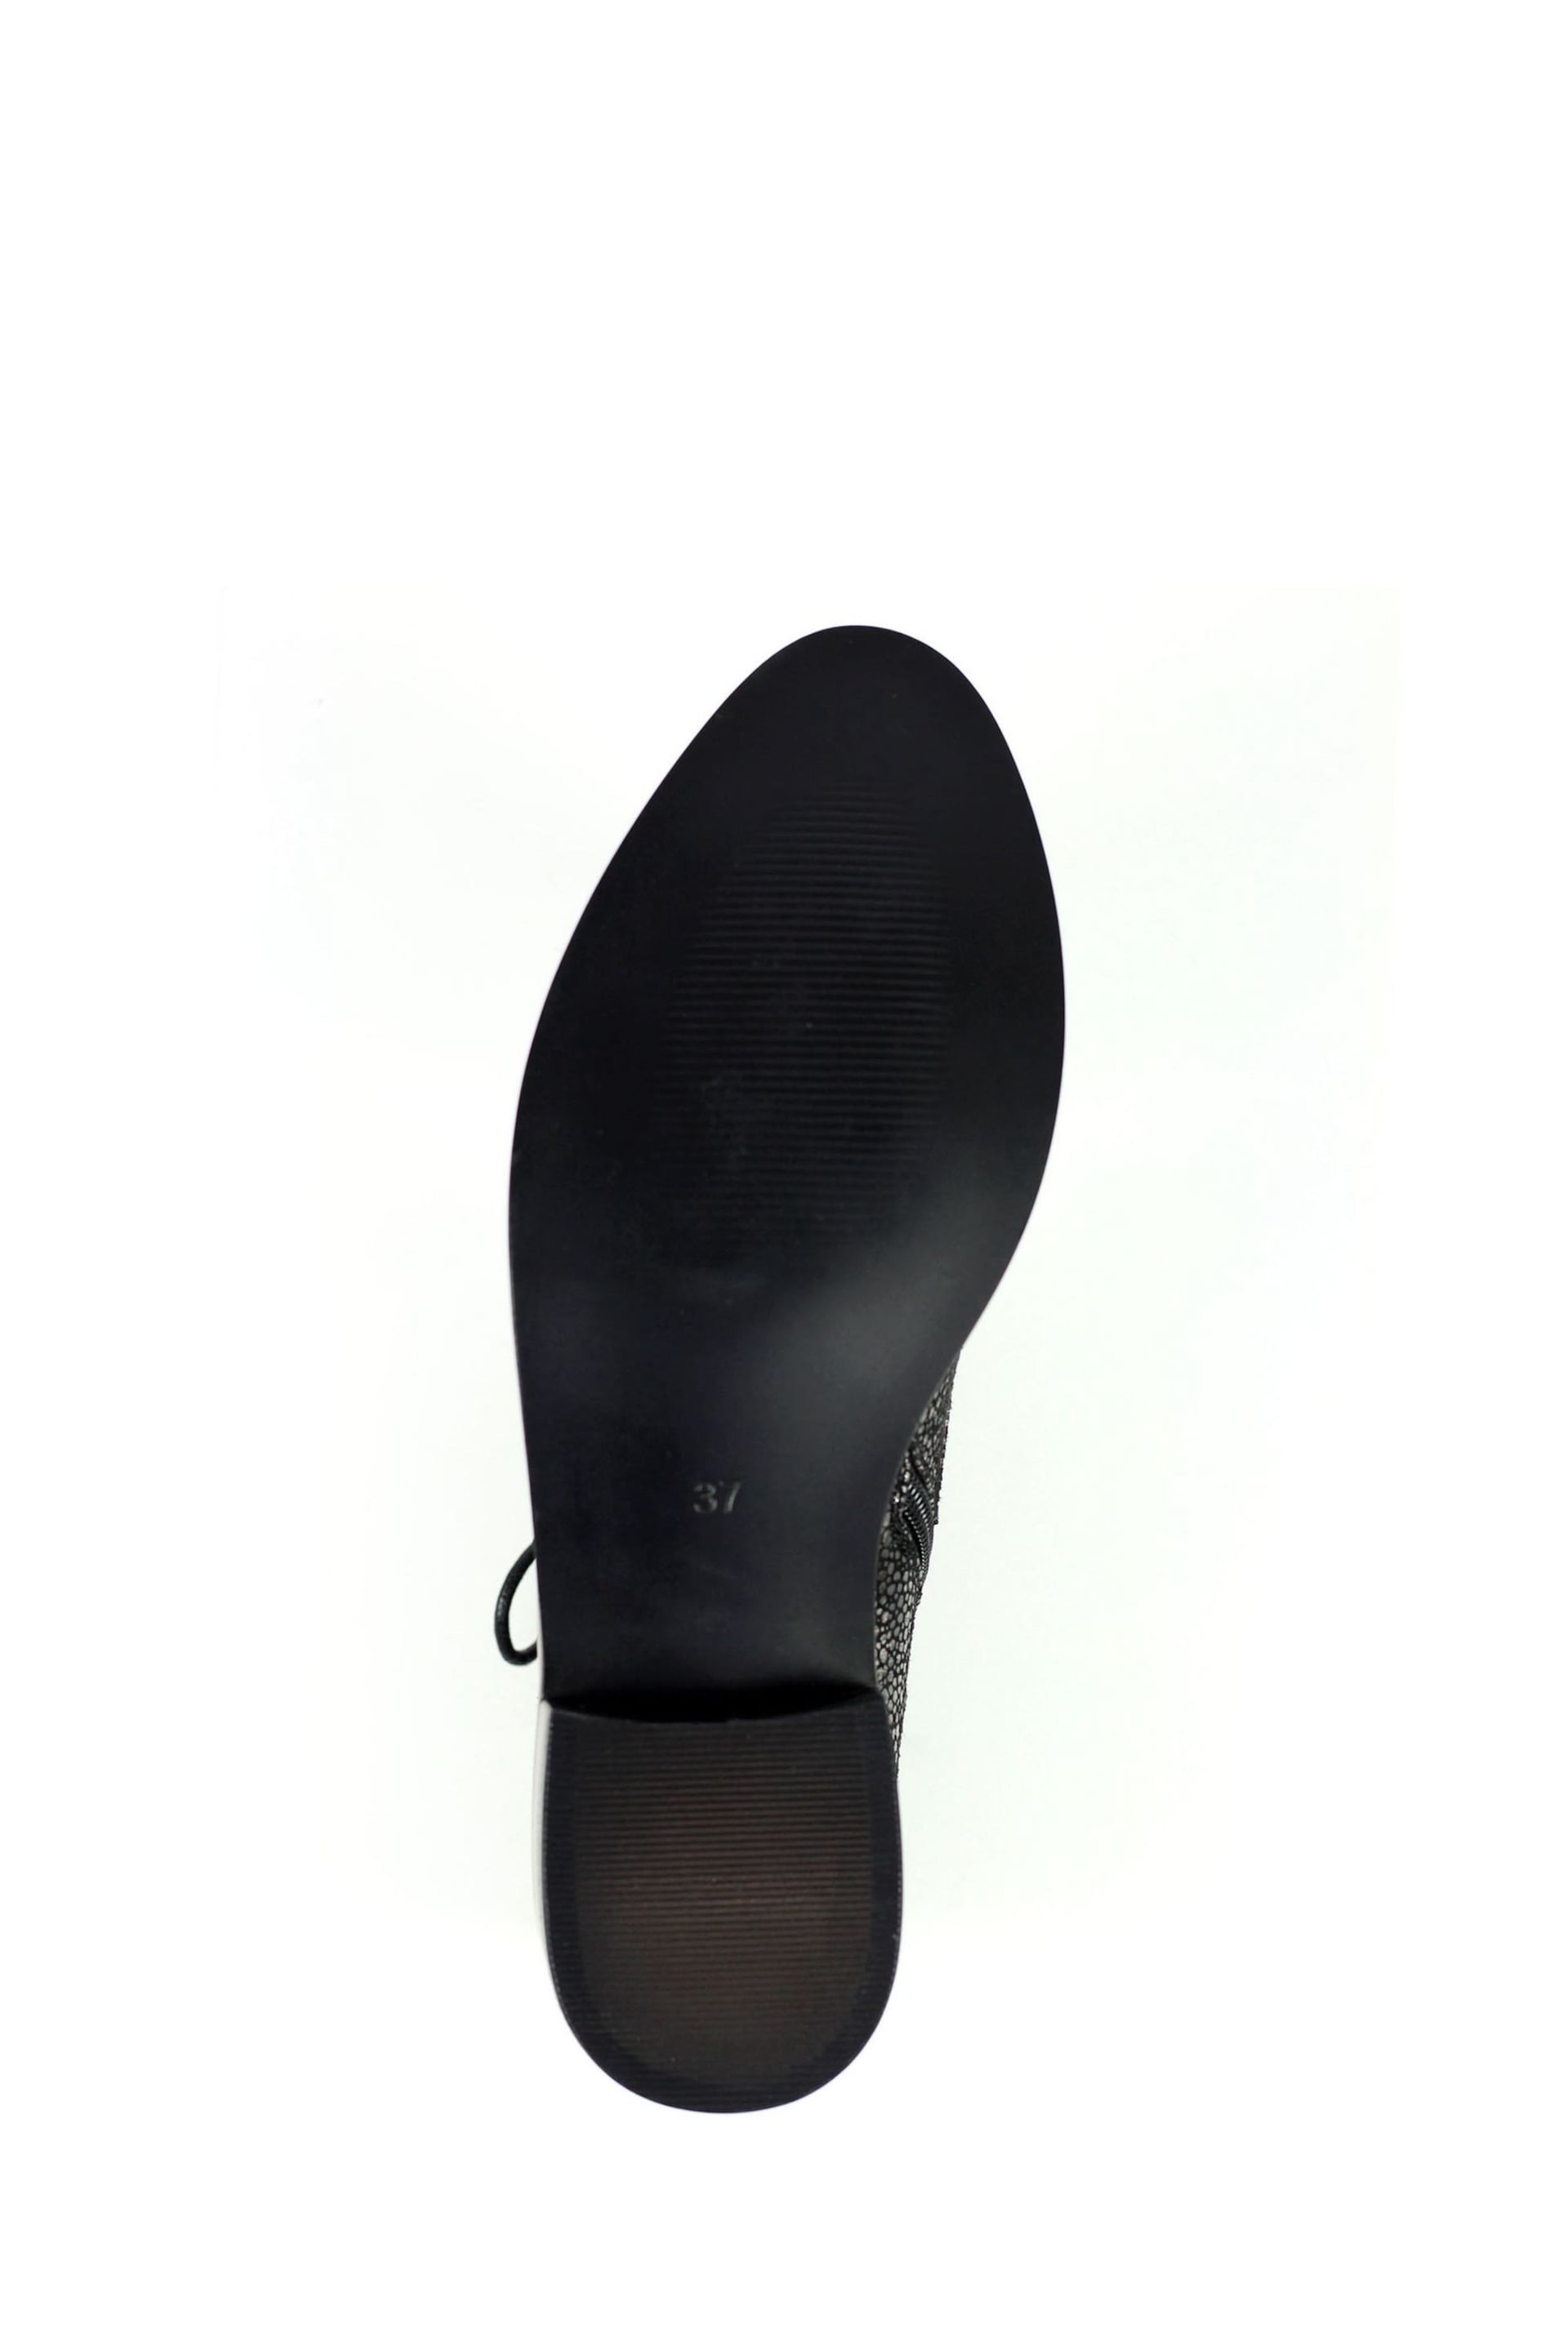 Lunar Caliban Black Ankle Boots - Image 8 of 9